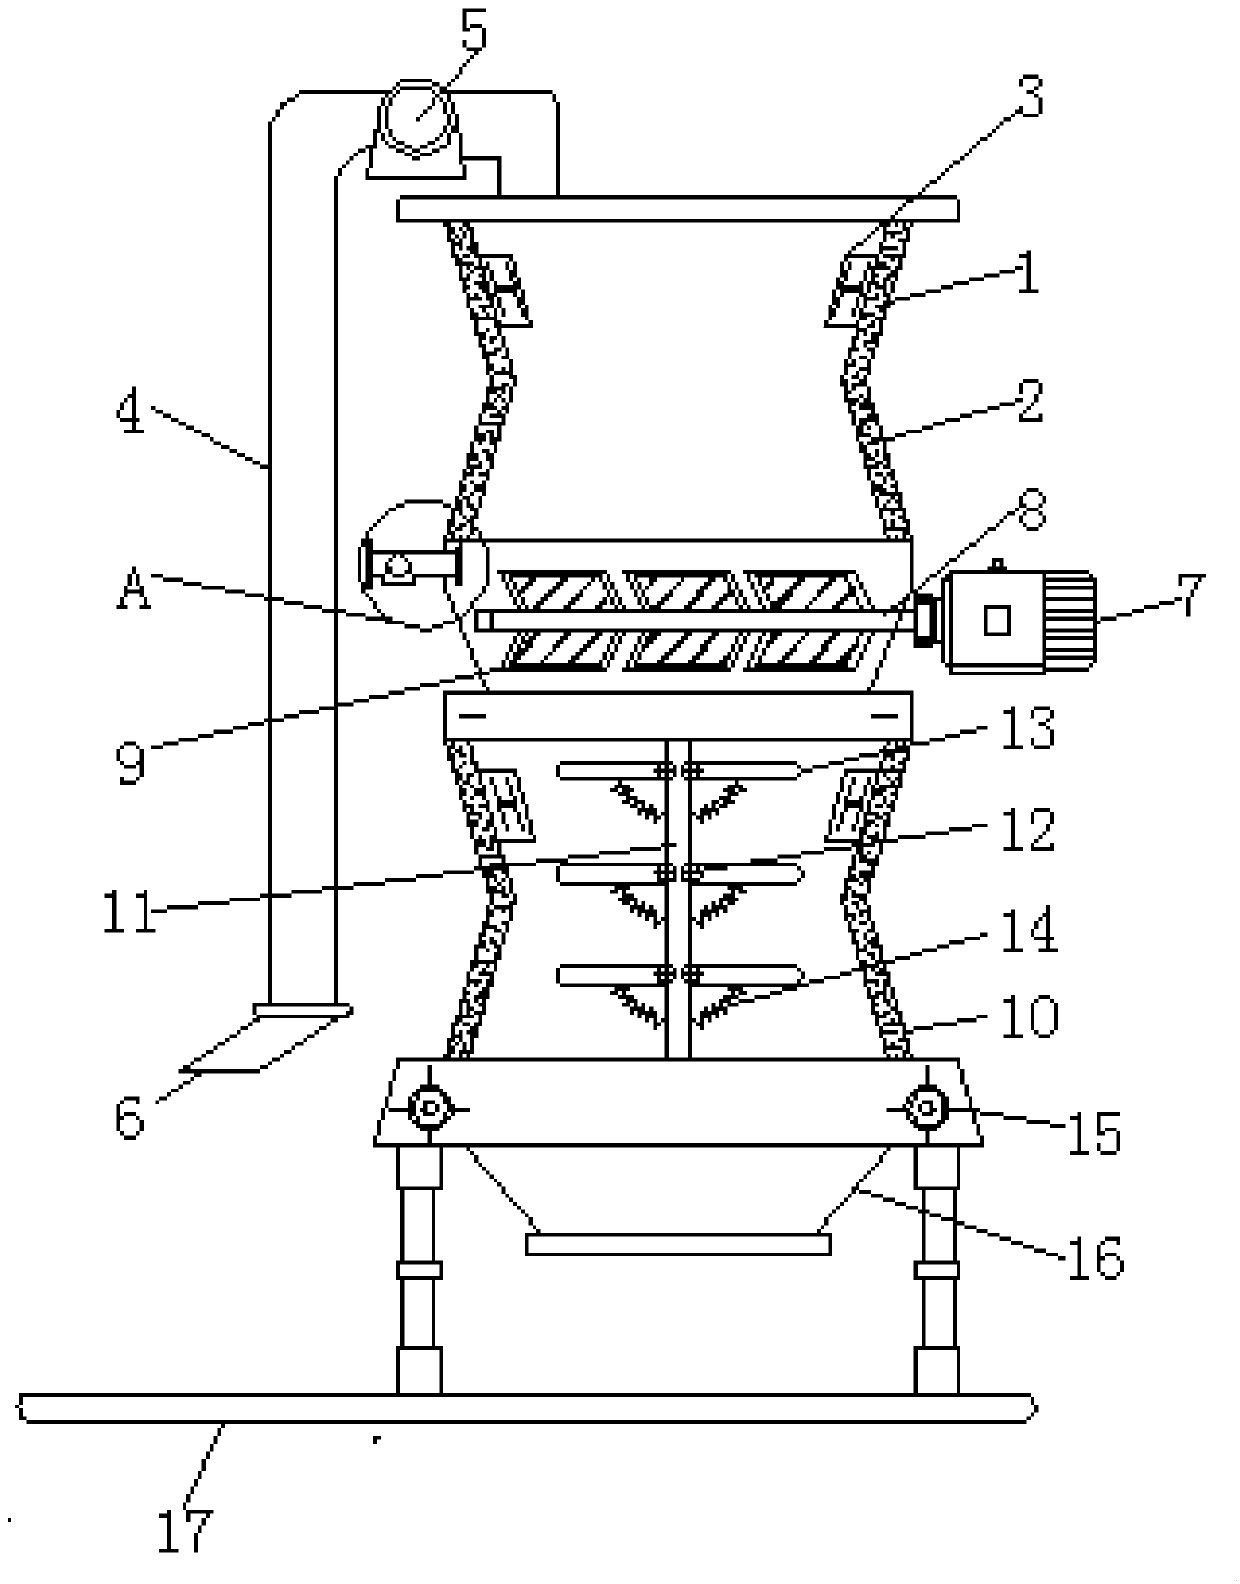 Double-barrel grain dryer